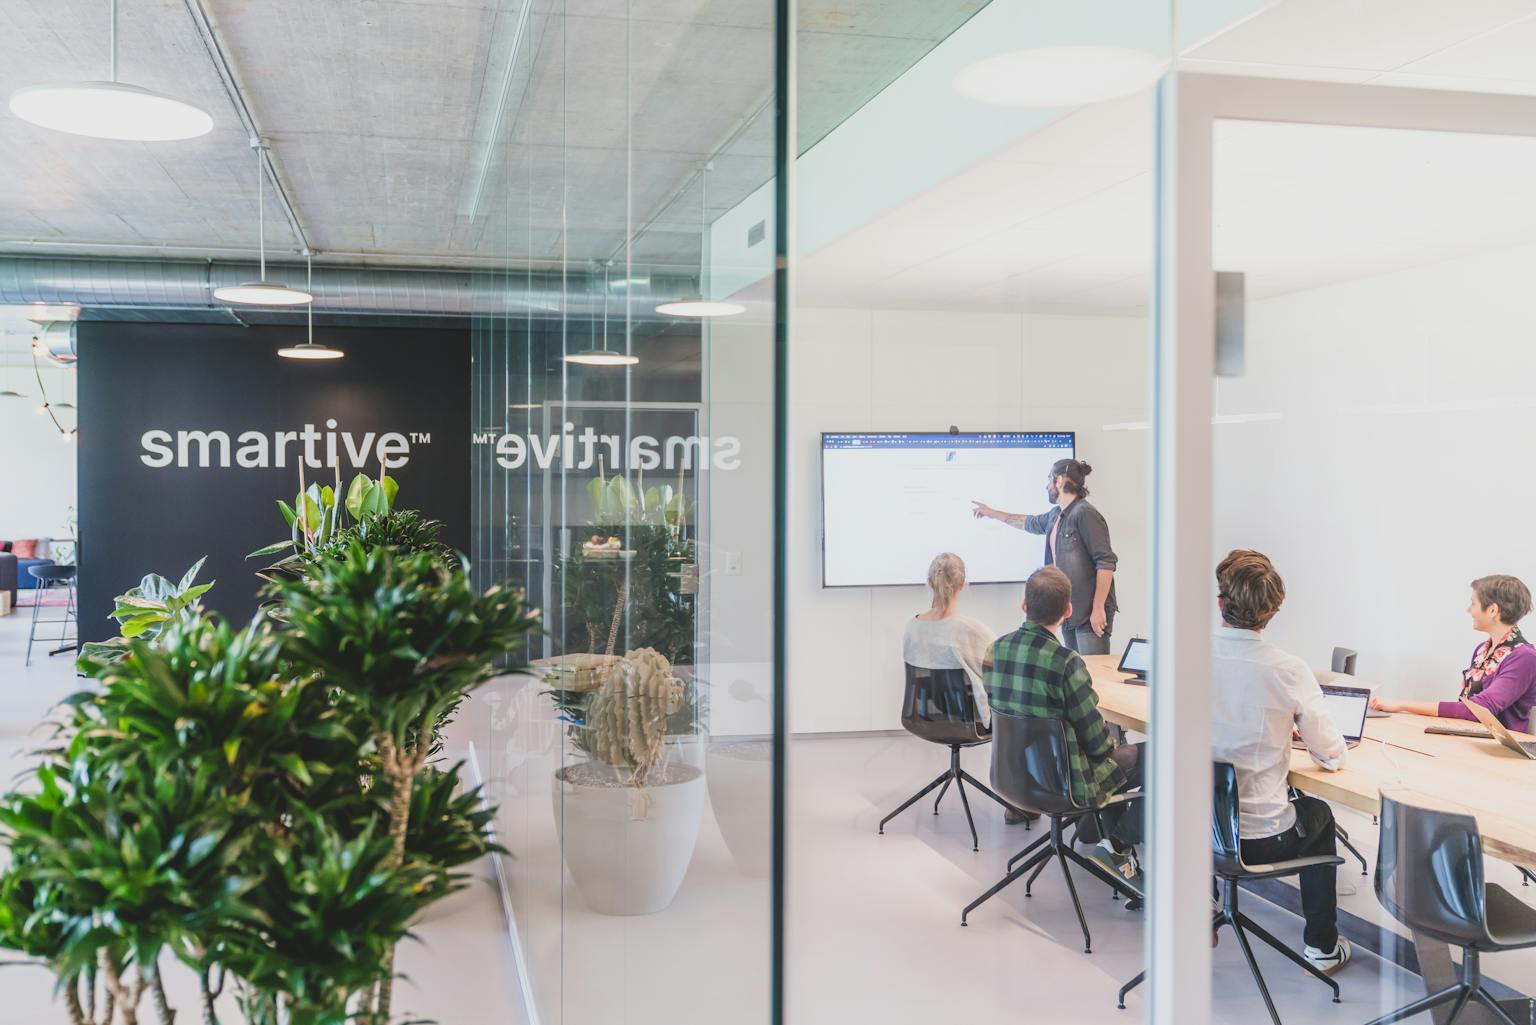 Blick ins smartive Büro mit Logo an der Wand. Mitarbeiter haben ein Meeting im Konferenzraum.